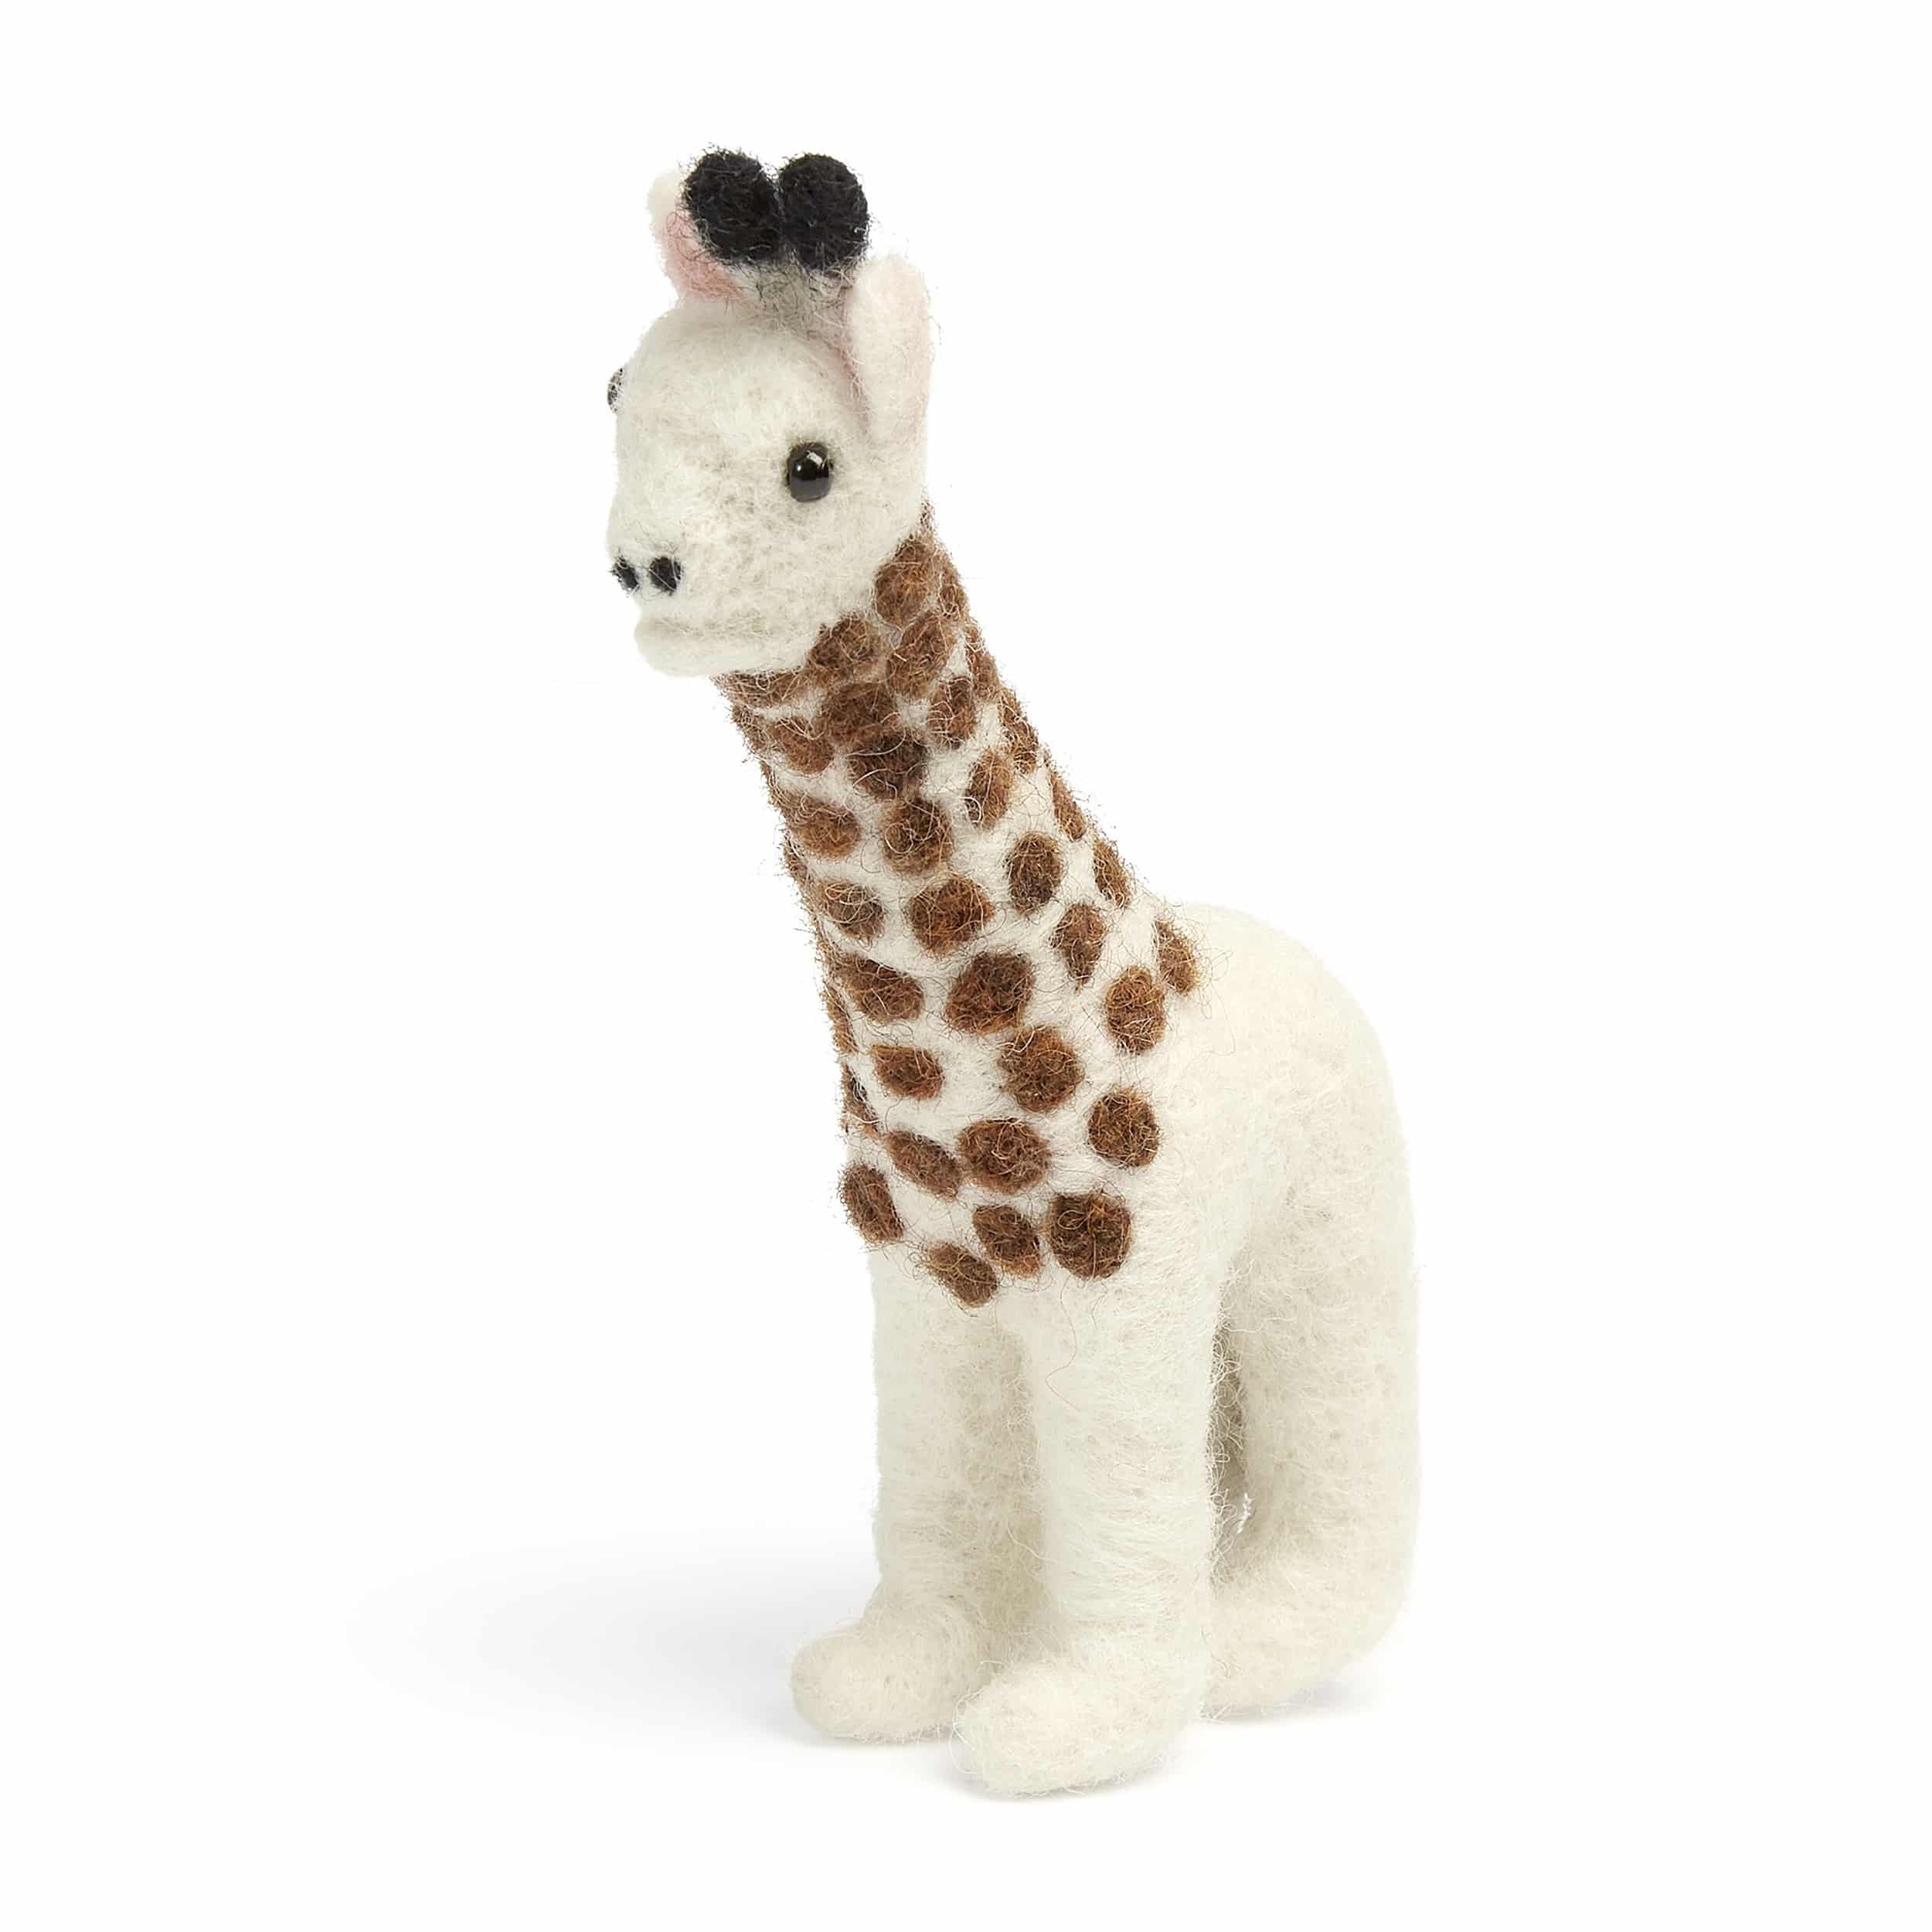 Needle Felting Giraffe Kit. Easy Felting. Craft Activity. Giraffe Felting.  DIY Felting. Birthday Gift. Christmas Gift. Beginner Felting Kit. 